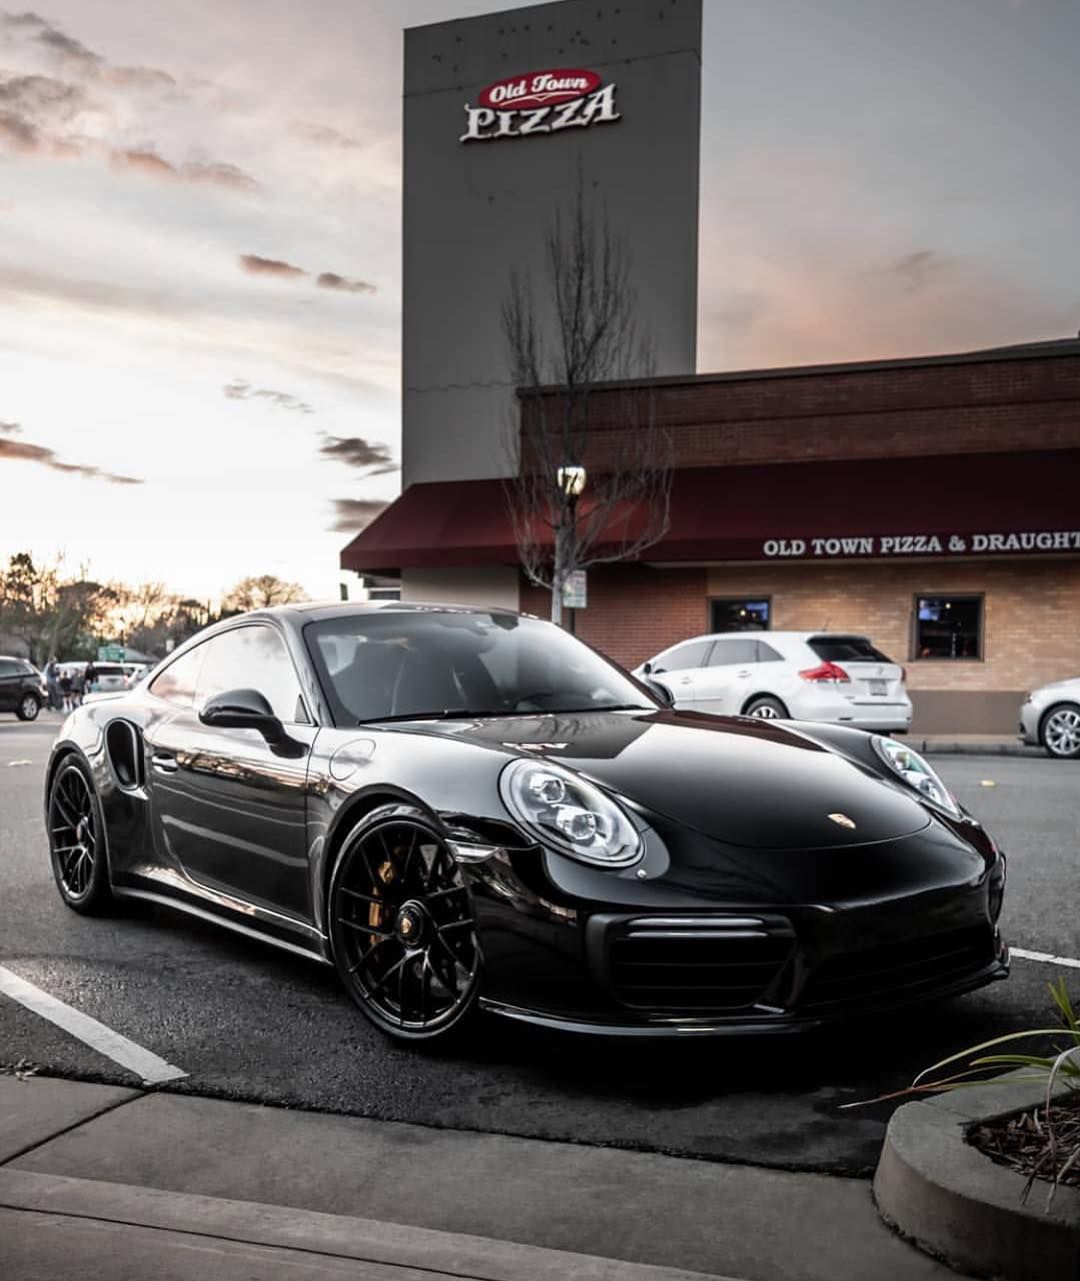 Porsche Club on Instagram: “991.2 Turbo S via @mattfraser9”